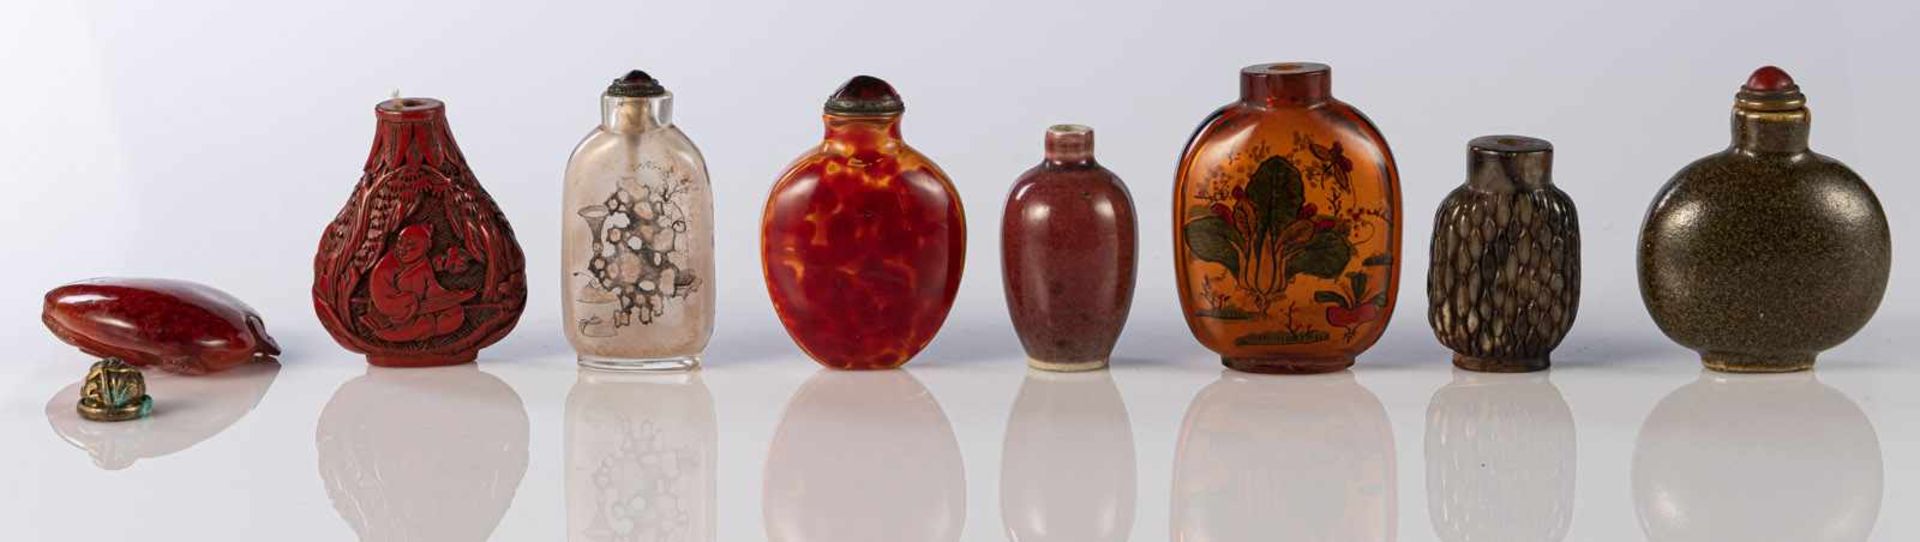 Sieben Snuffbottles, u.a. Glas, Stein und Porzellan, Pfirischanhänger aus Achat - Bild 2 aus 5